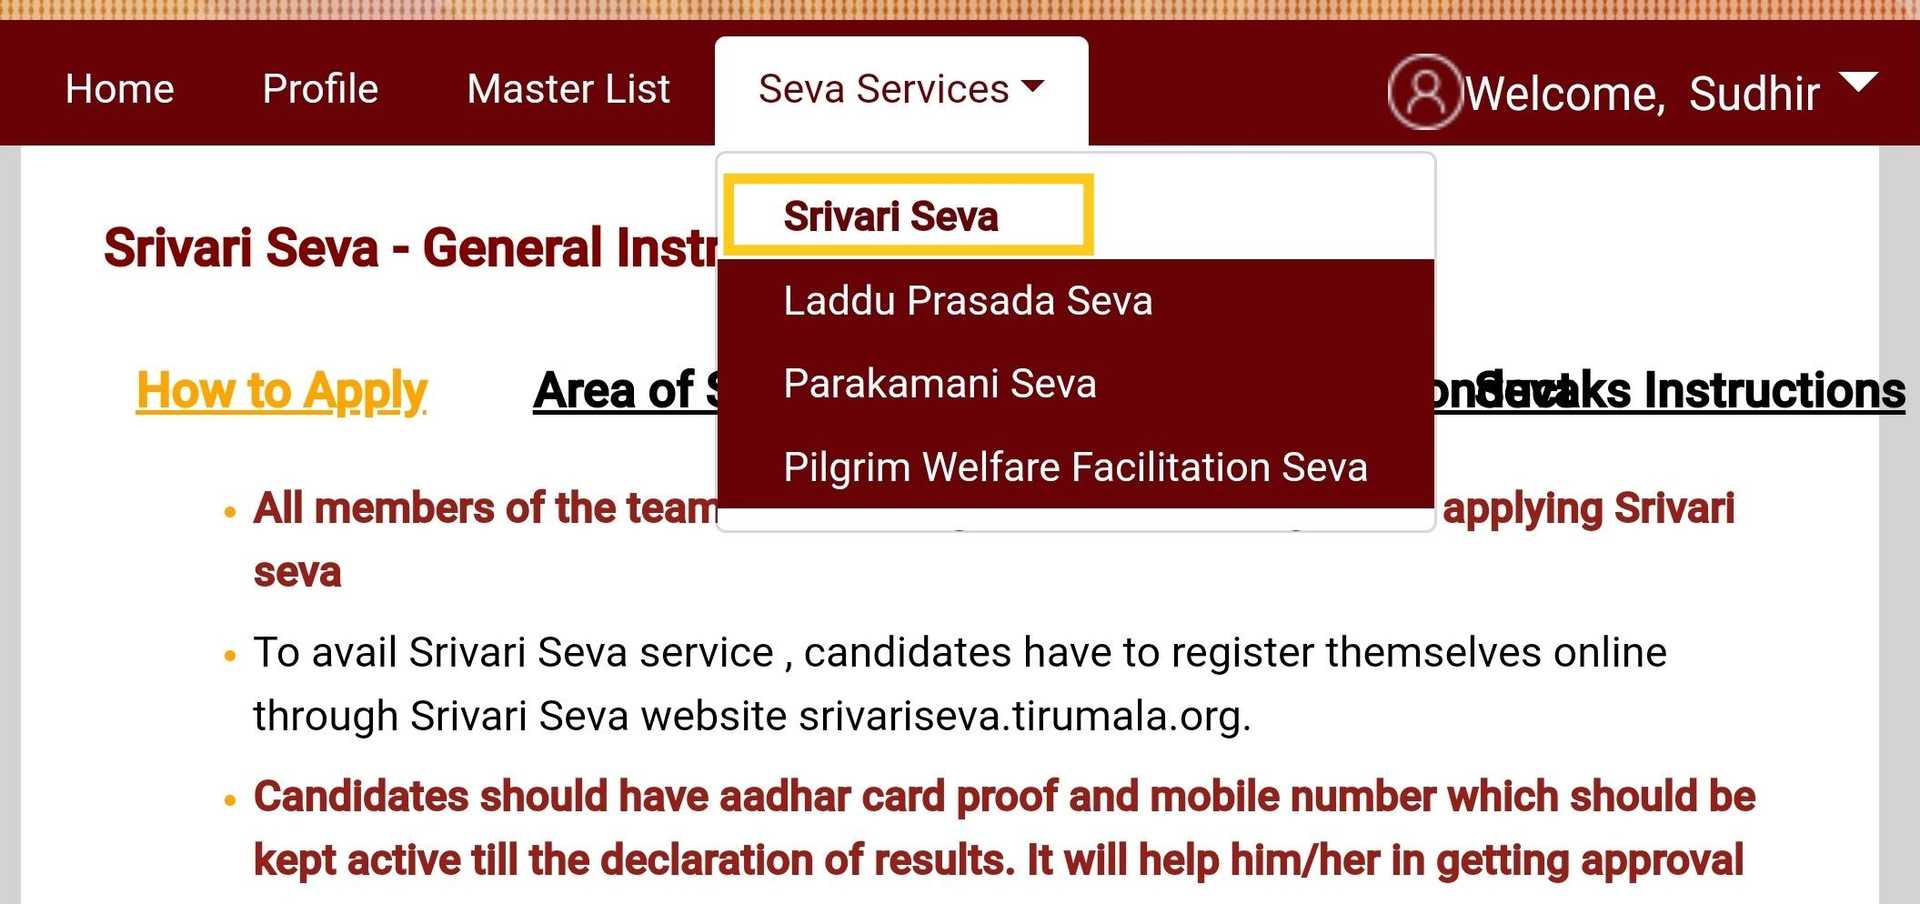 Open Seva Services